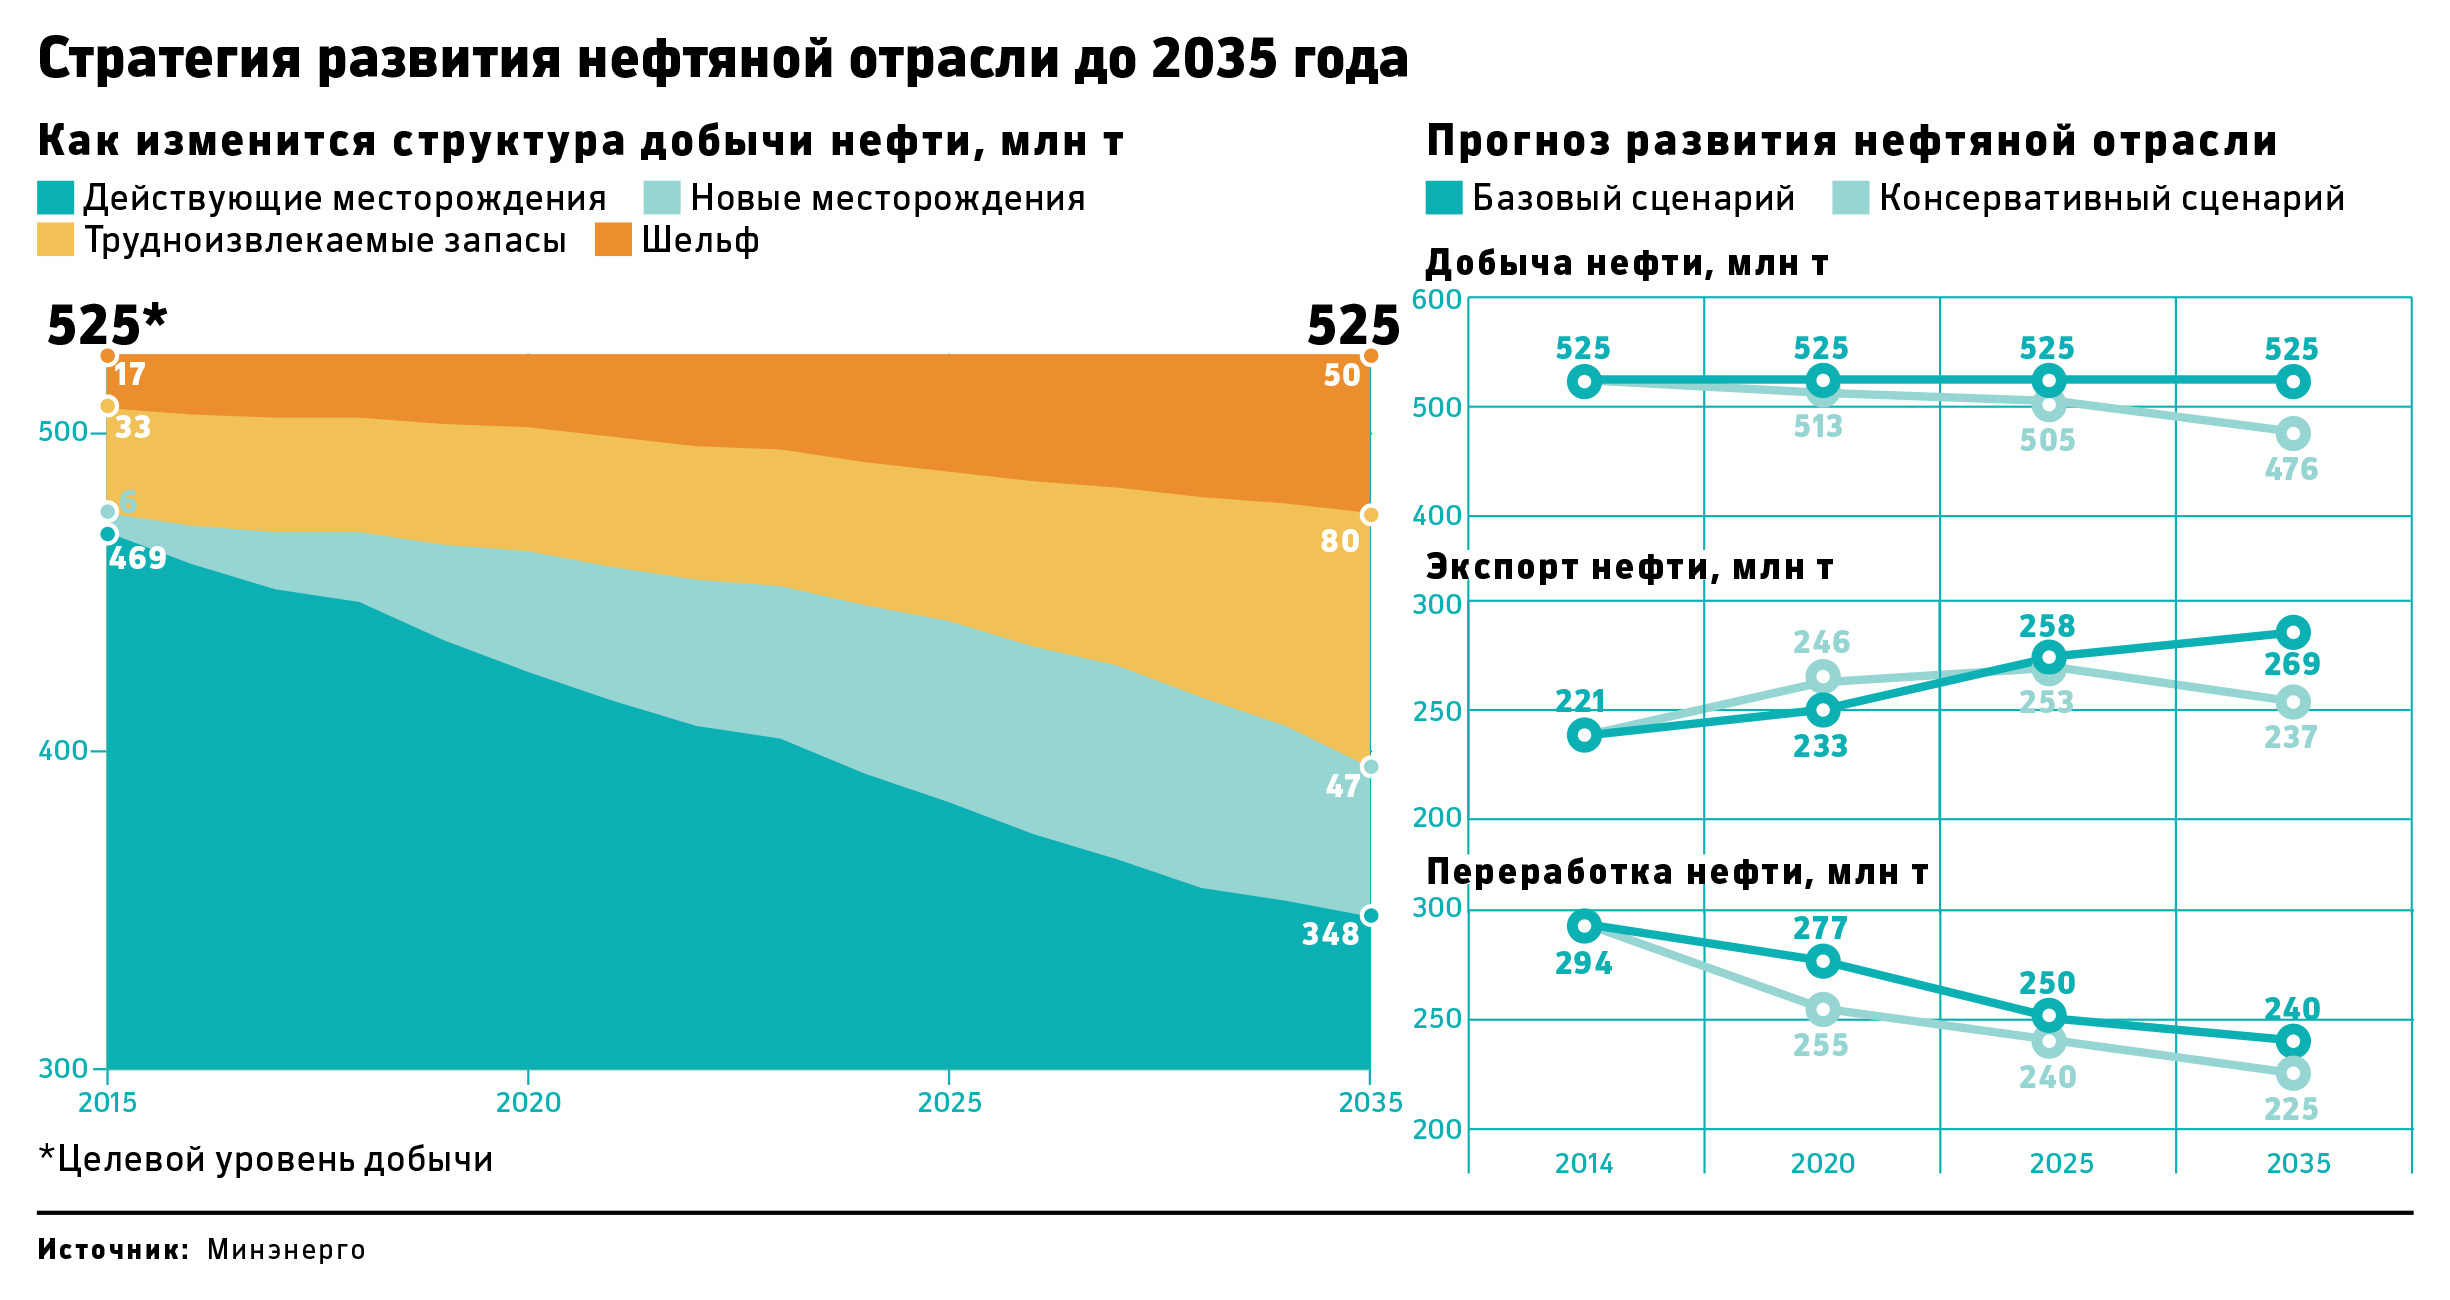 Конец легкой нефти: насколько сократится ее добыча в России к 2035 году